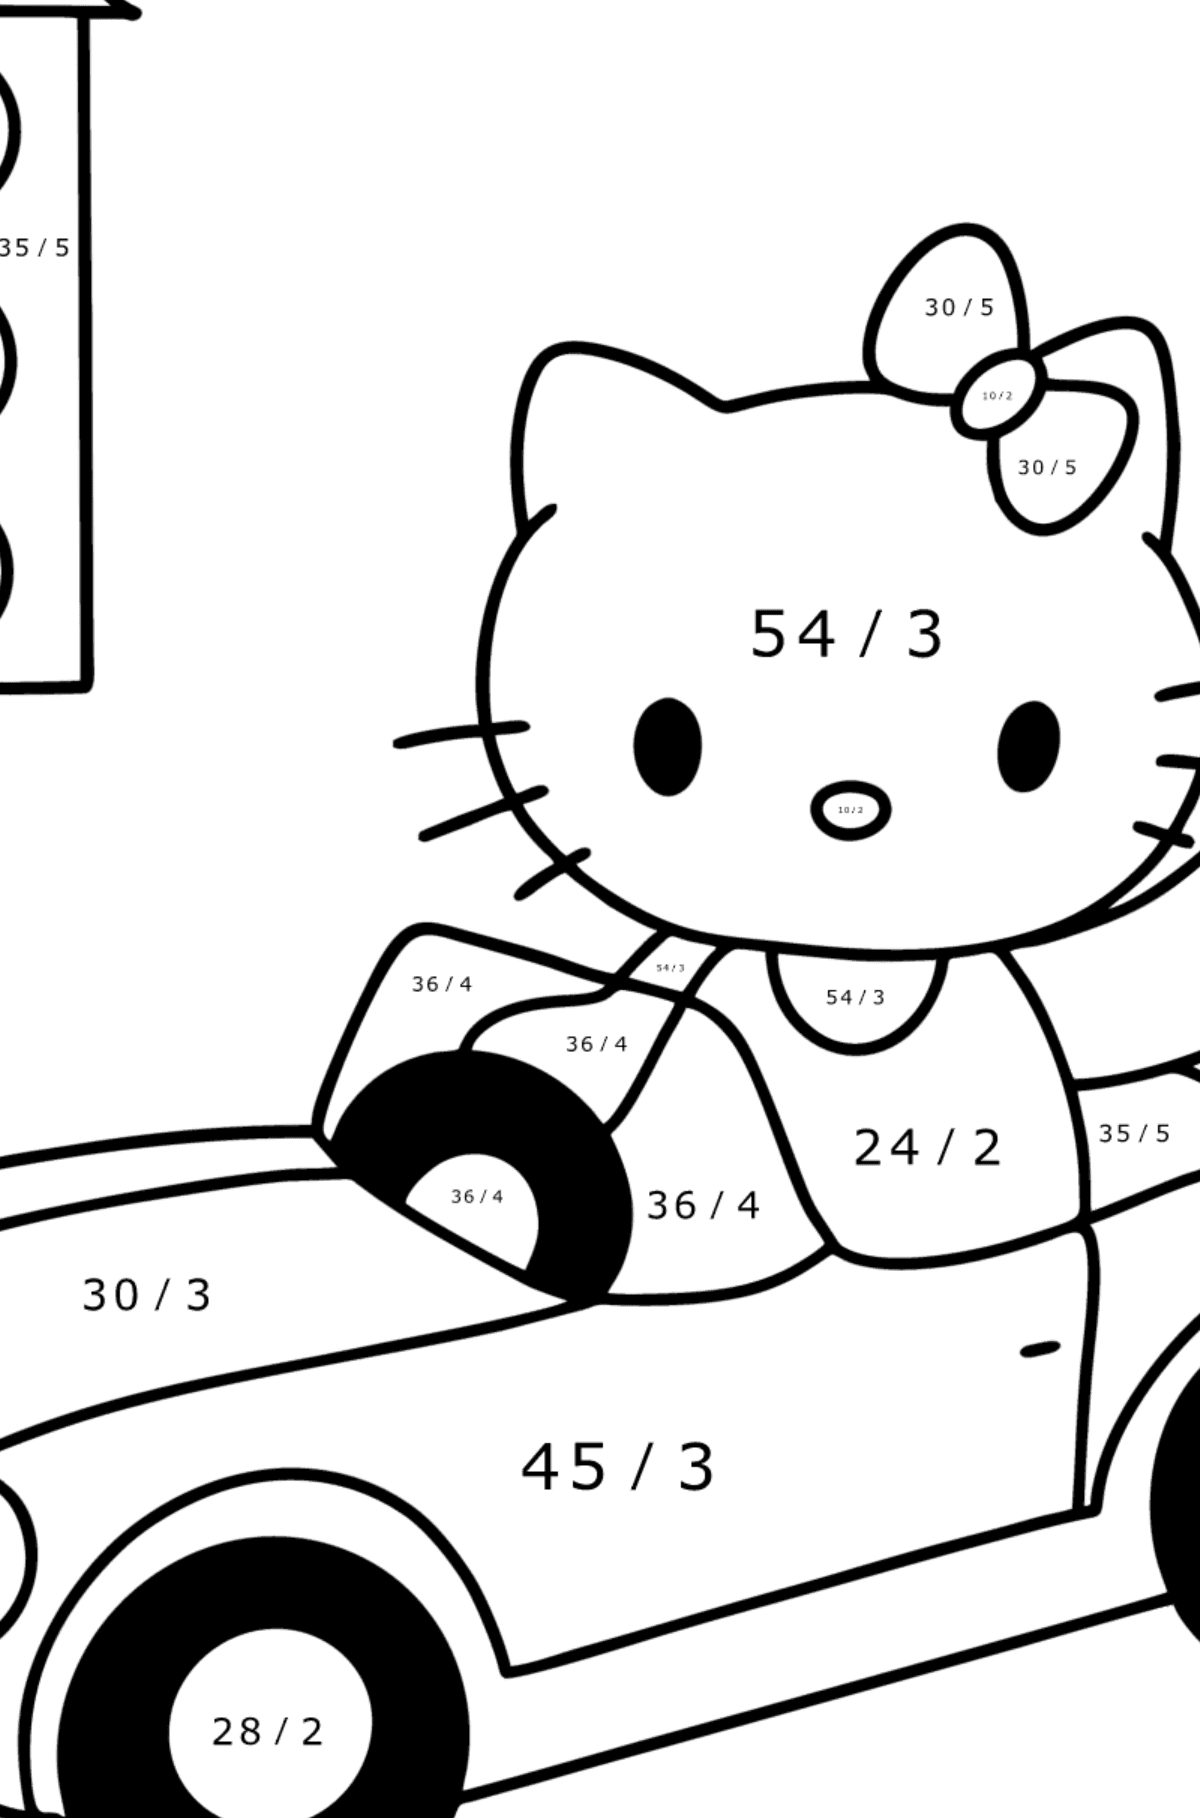 Boyama sayfası Hello Kitty ve araba - Matematik Boyama - Bölme çocuklar için